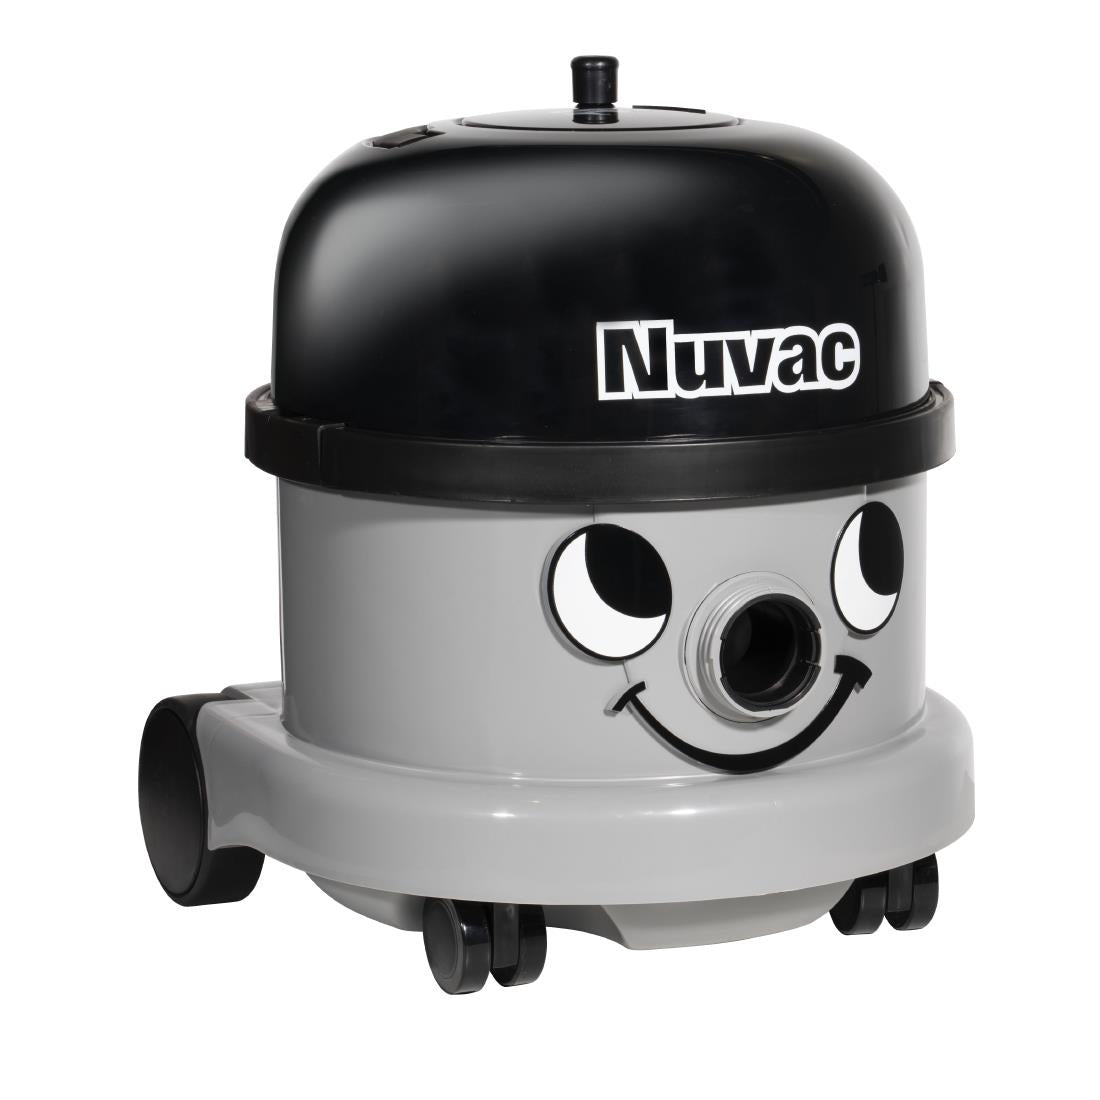 CK262 Numatic VNR200-11 Vacuum Cleaner